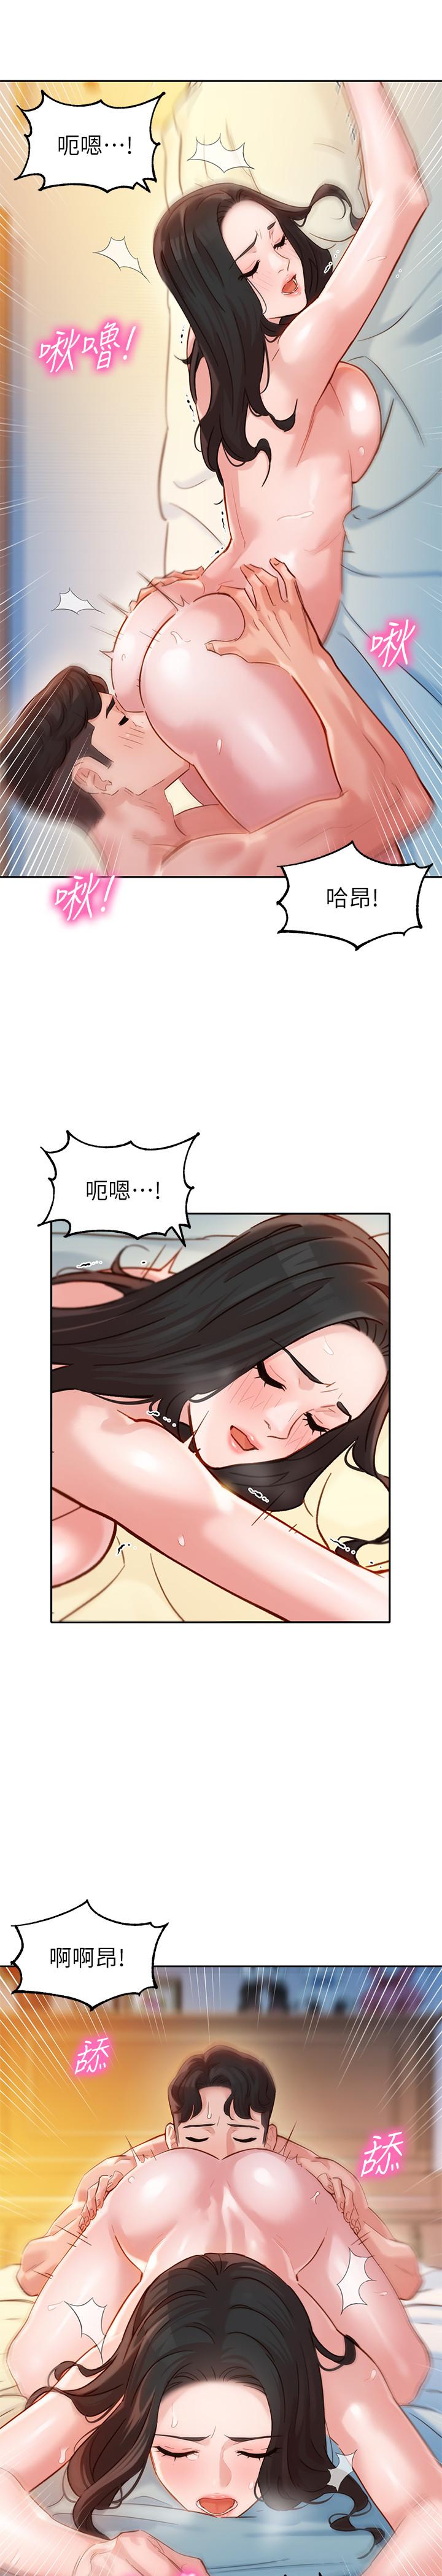 韩国污漫画 女神寫真 第22话-实现梦寐以求的心愿 19